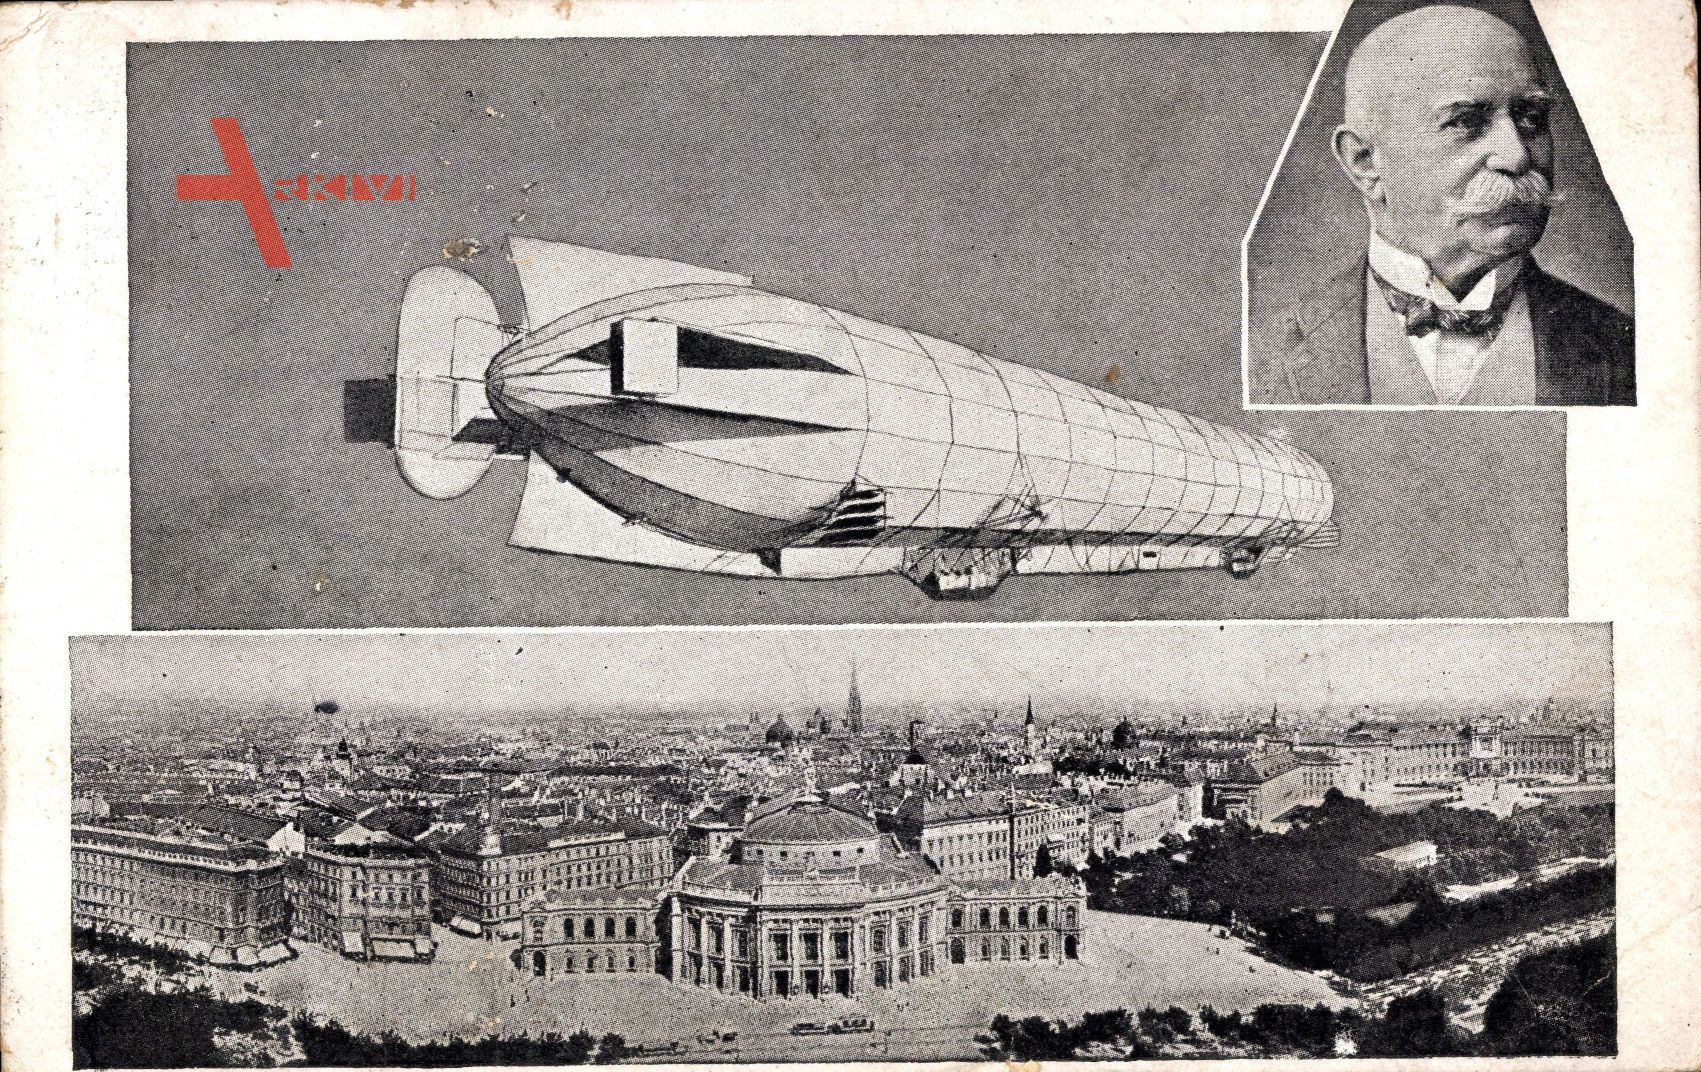 Wien Österreich, Graf Zeppelin mit seinem lenkbaren Luftschiff